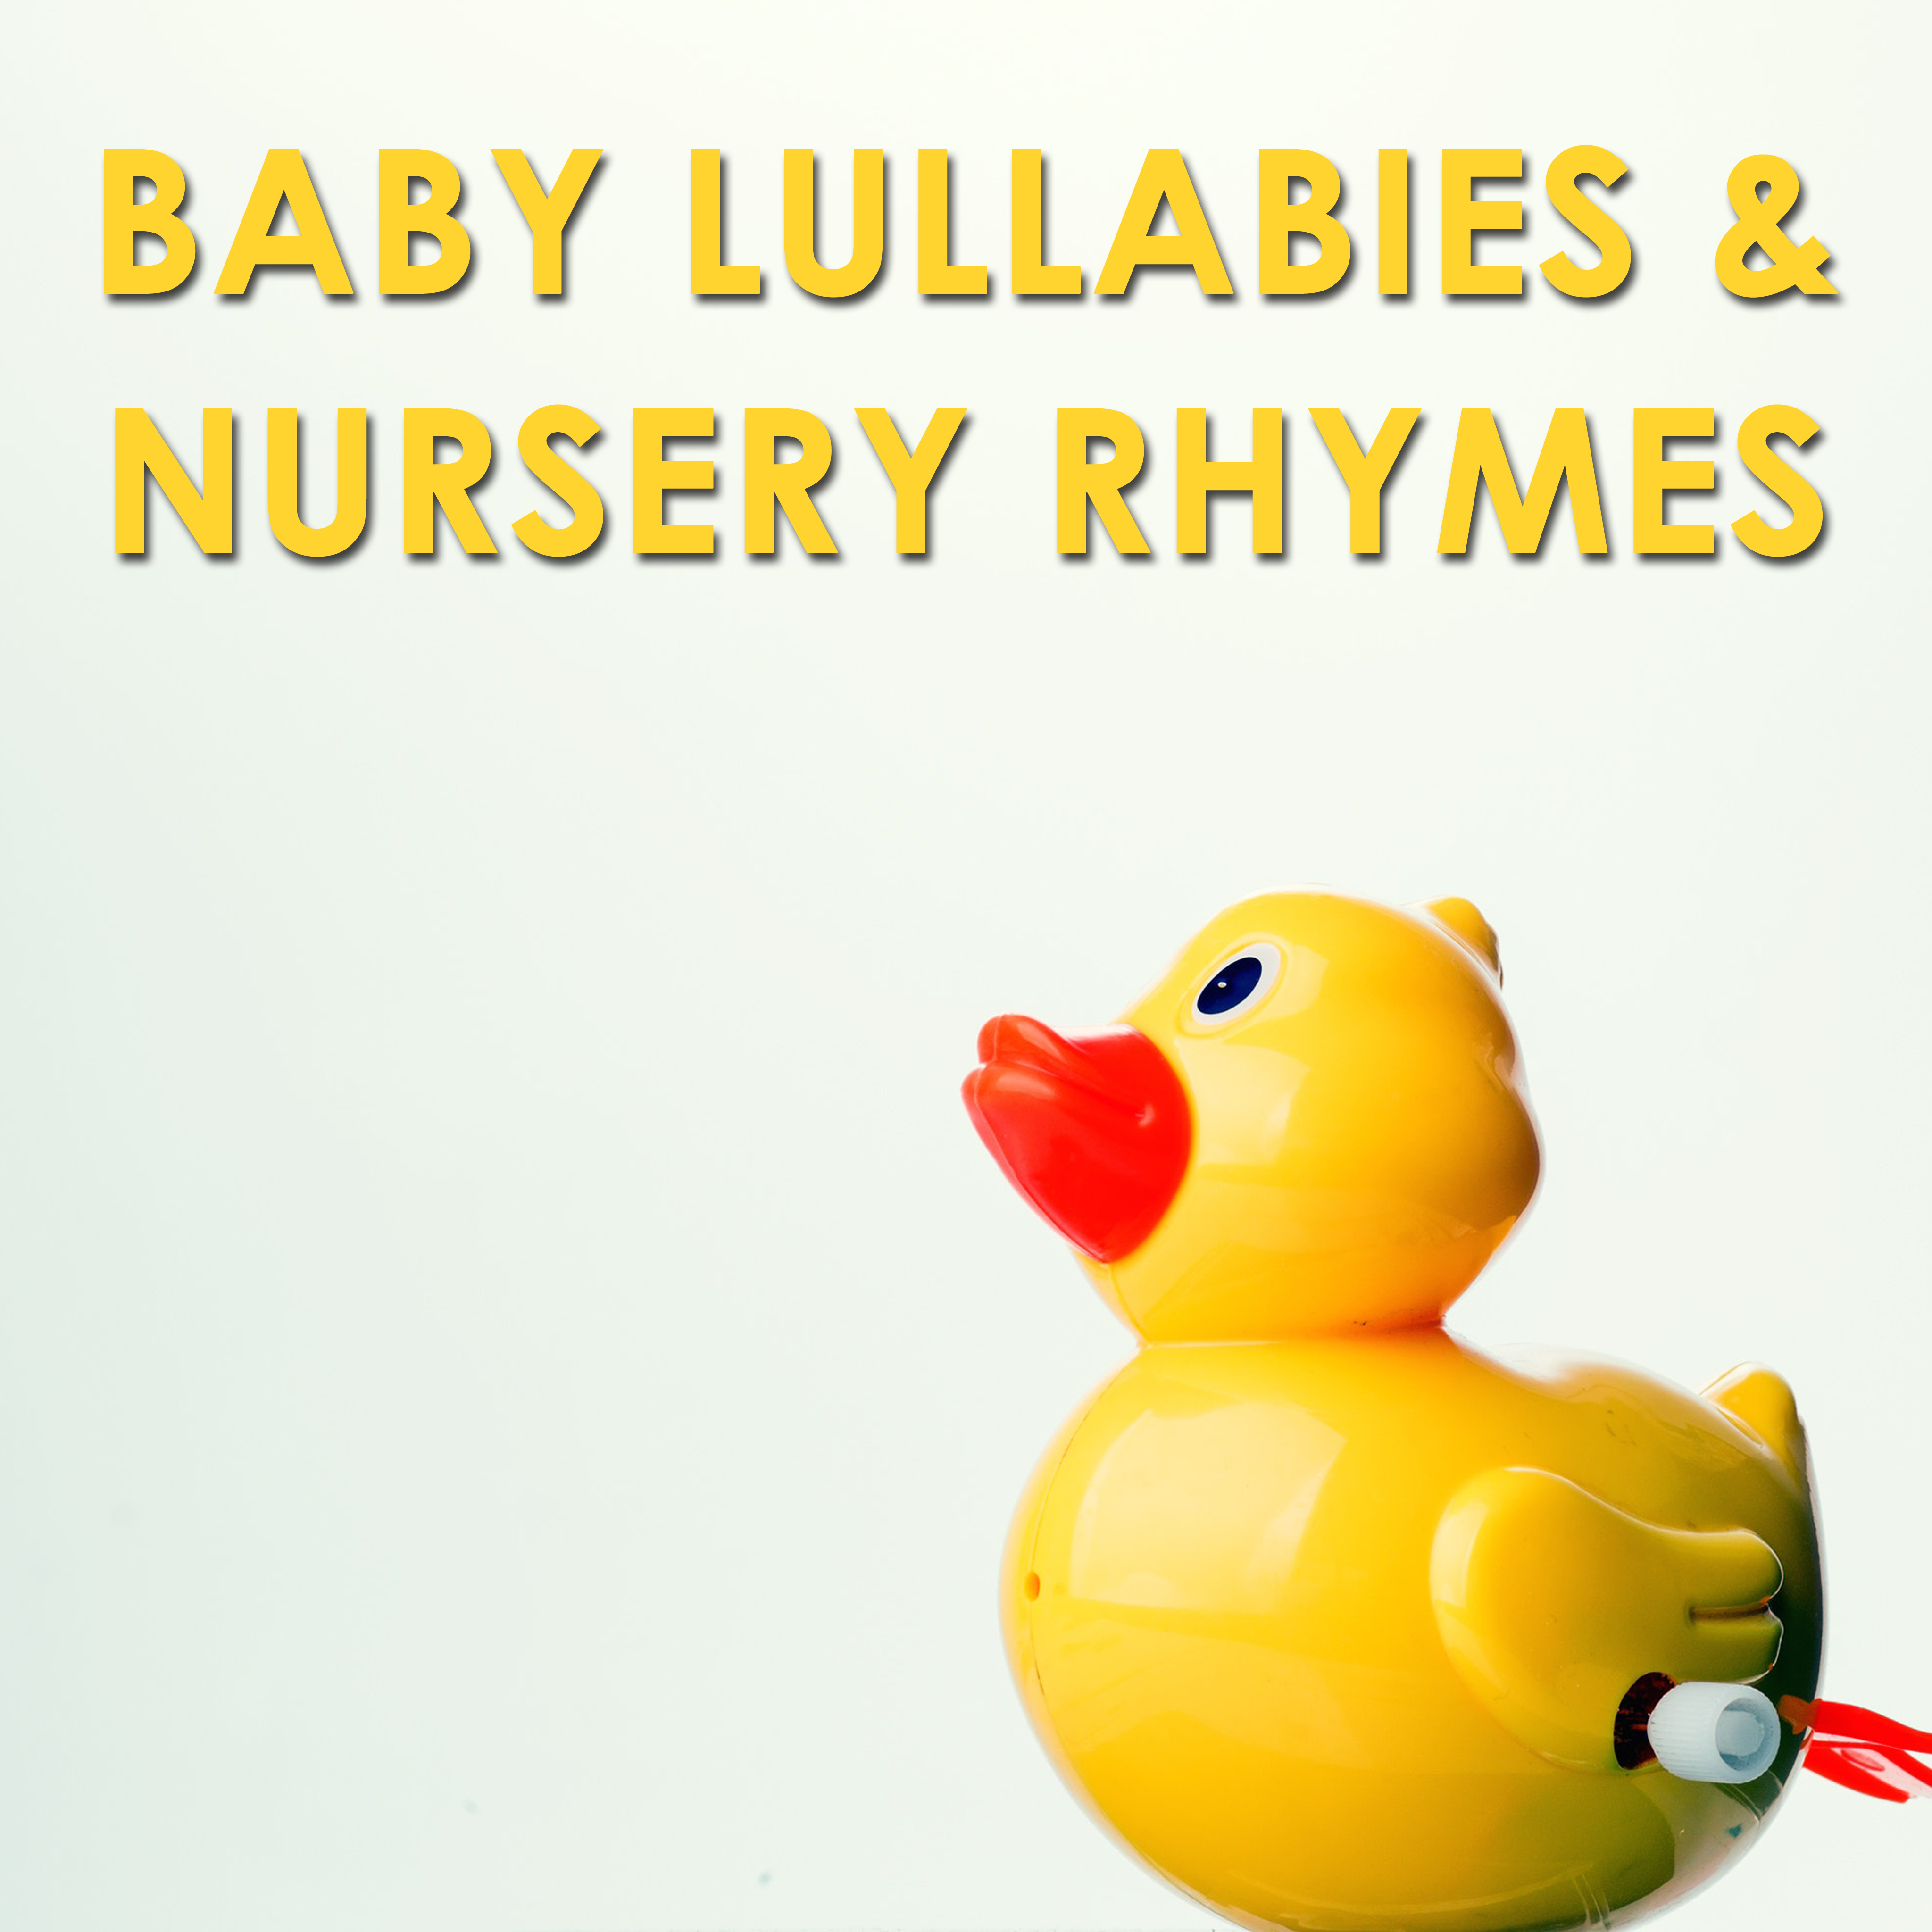 14 Baby Lullabies & Nursery Rhymes for Better Sleep